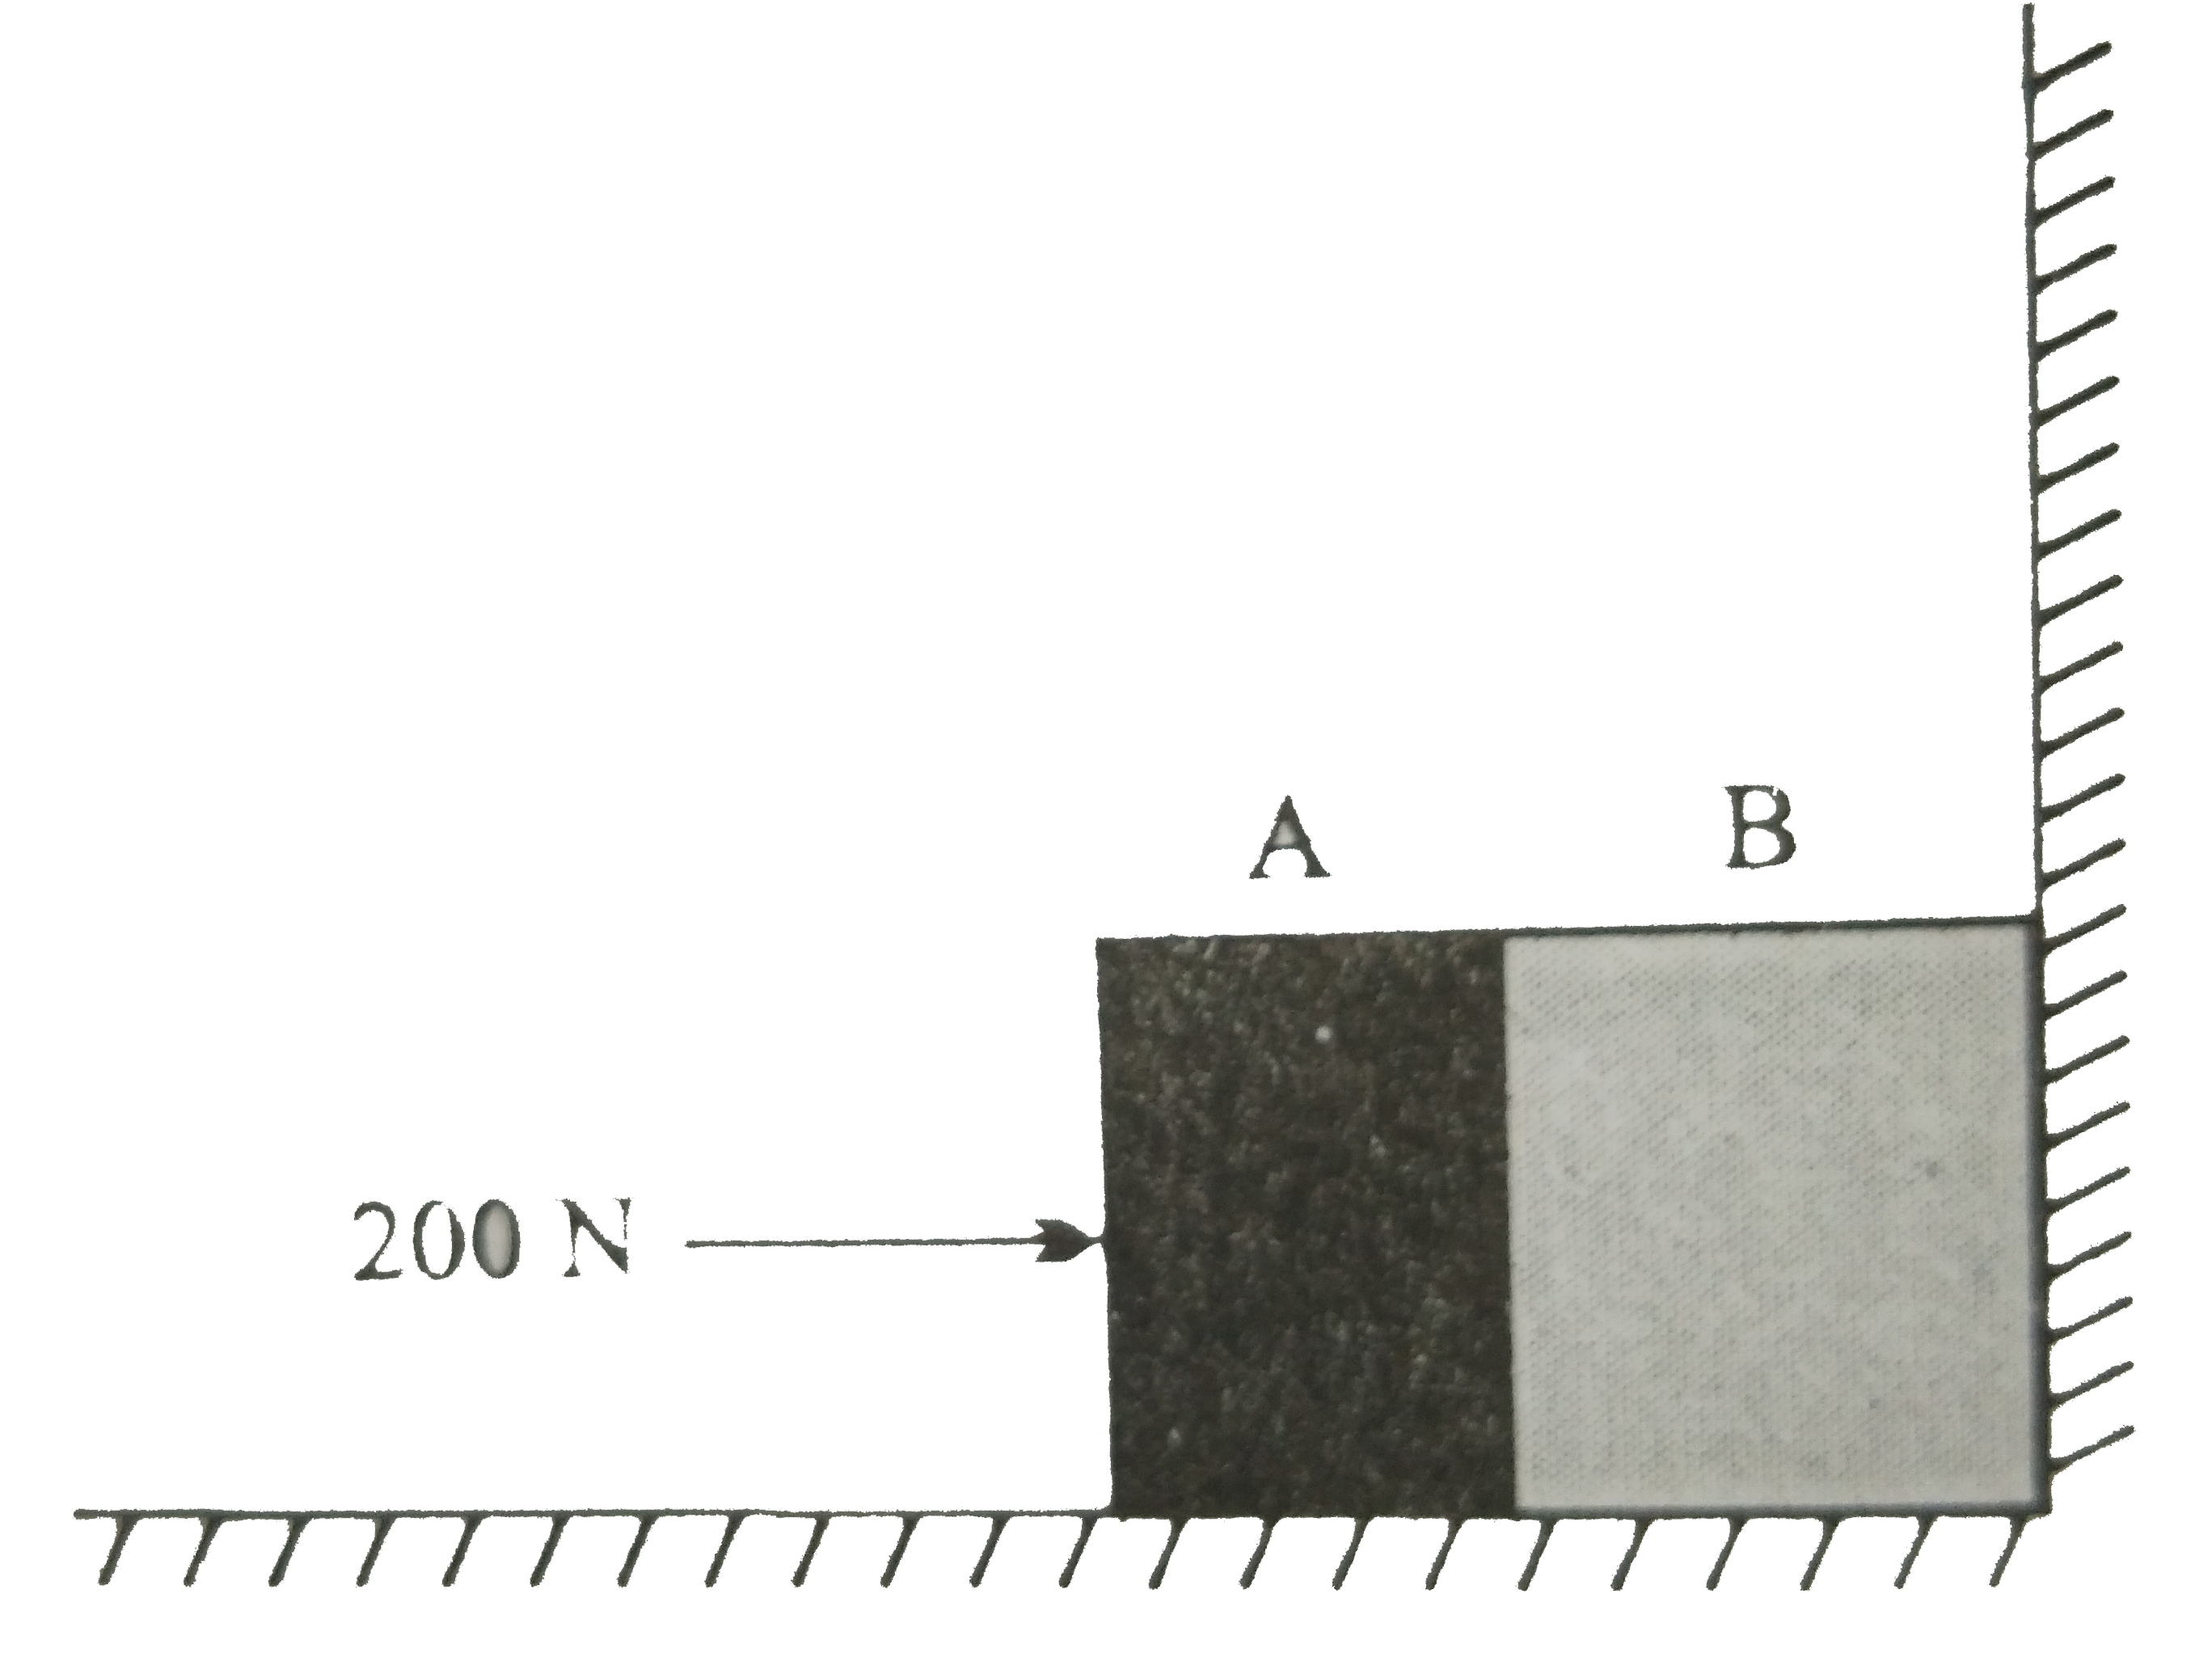 दो पिंड A तथा B जिनकी संहति क्रमशः 5 kg तथा 10 kg हैं, एक दूसरे के संपर्क में एक मेज पर किसी दृढ़ विभाजक दीवार के सामने विराम में रखे हैं | चित्र में पिंडों तथा मेज के बीच घर्षण गुणांक 0.15 है | 200 N का कोई बल क्षैतिजतः  A पर आरोपित किया जाता है | (a) विभाजक दीवार की प्रतिक्रिया तथा (b) a तथा b के बीच क्रिया - प्रतिक्रिया बल क्या है ? विभाजक दीवार को हटाने पर क्या  होगा ? यदि पिंड गतिशील हैं तो क्या (b) का उत्तर बदल जाएगा ? mu(s) तथा mu(k) के बीच अंतर की उपेक्षा कीजिए |